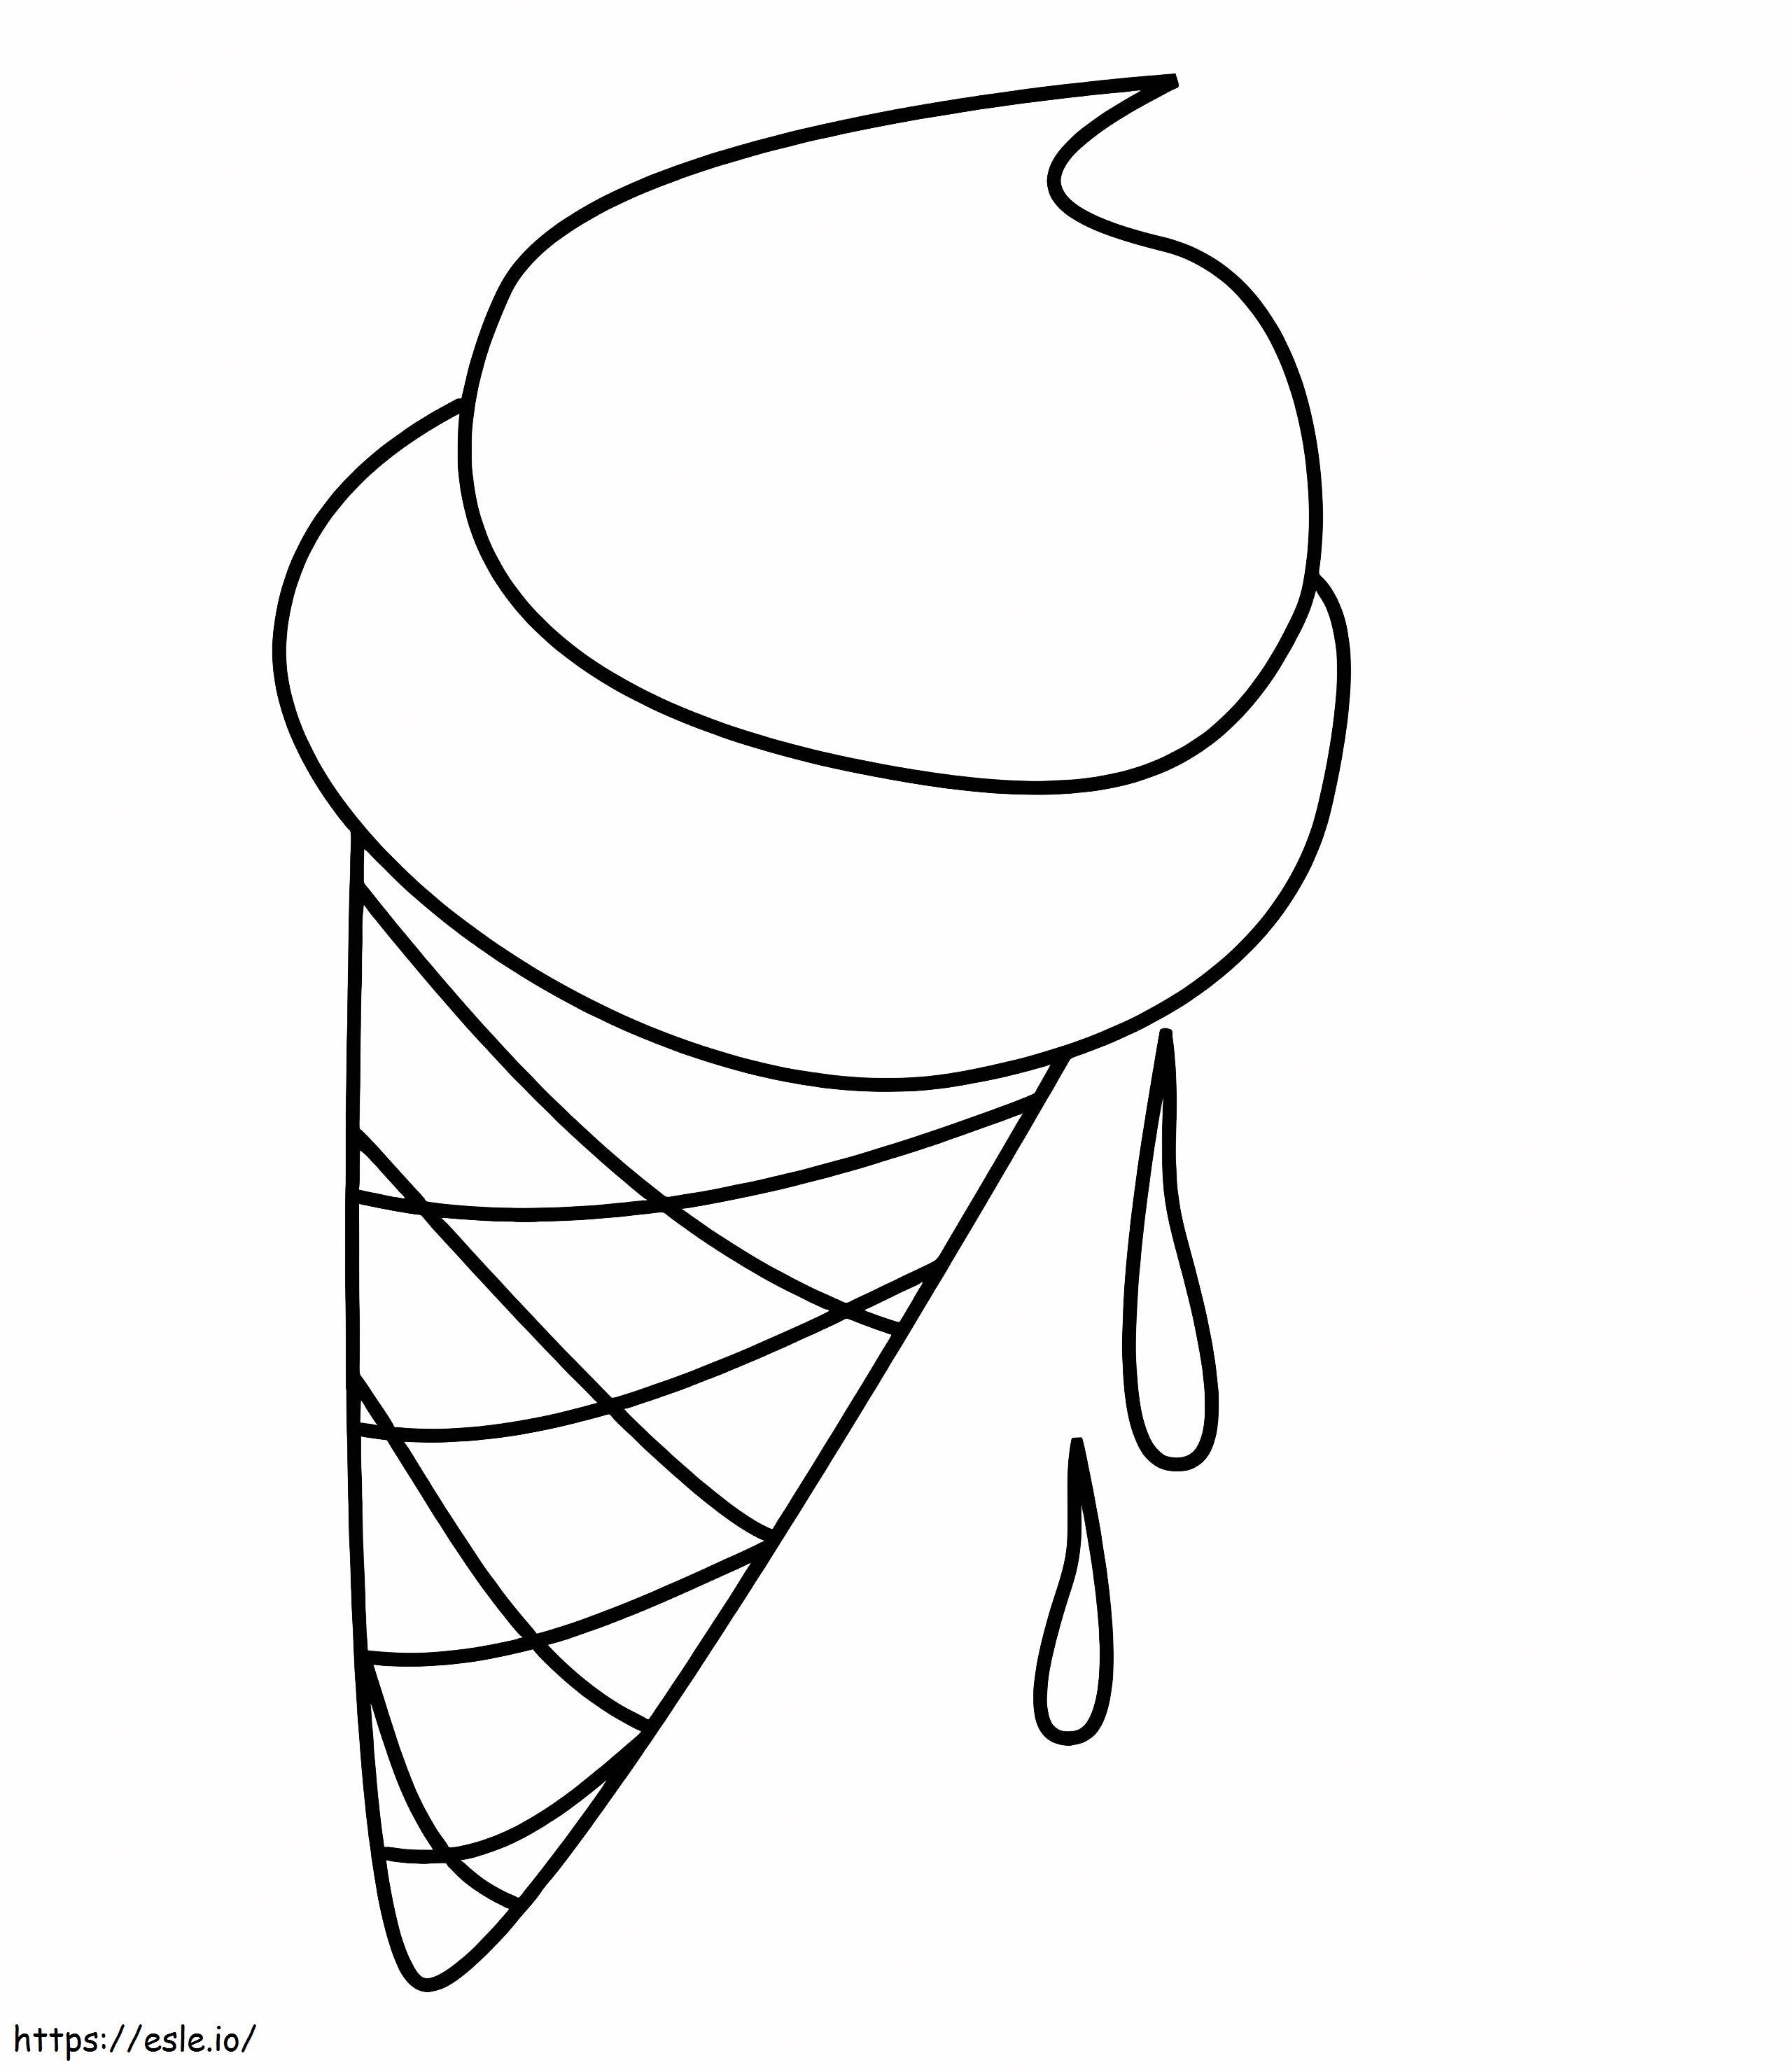 Înghețată foarte simplă de colorat